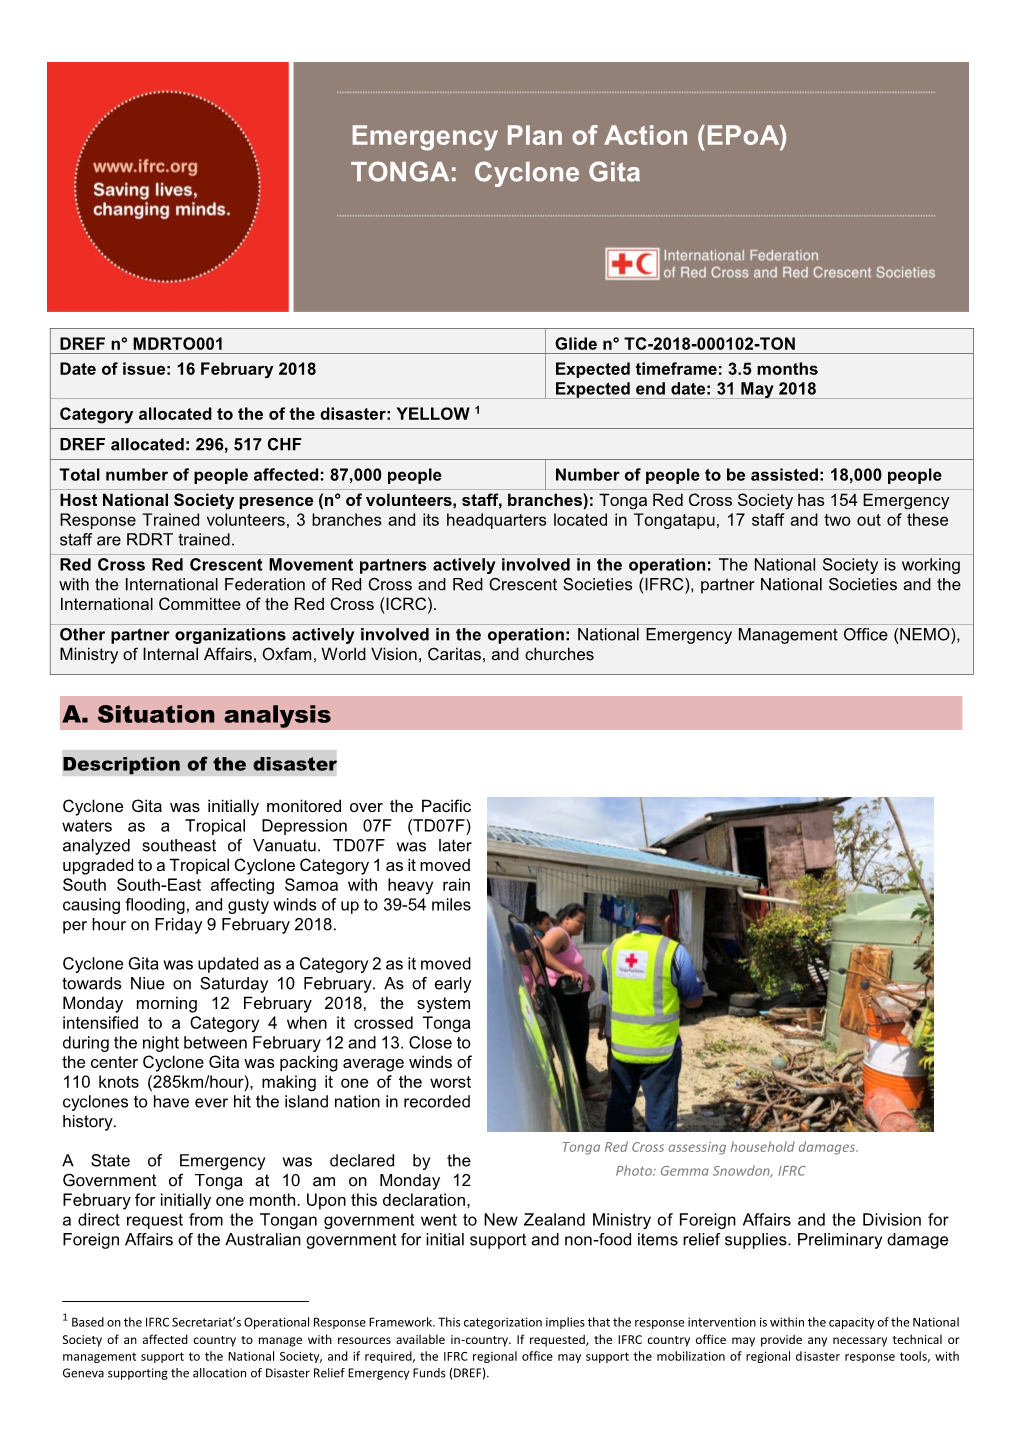 Emergency Plan of Action (Epoa) TONGA: Cyclone Gita